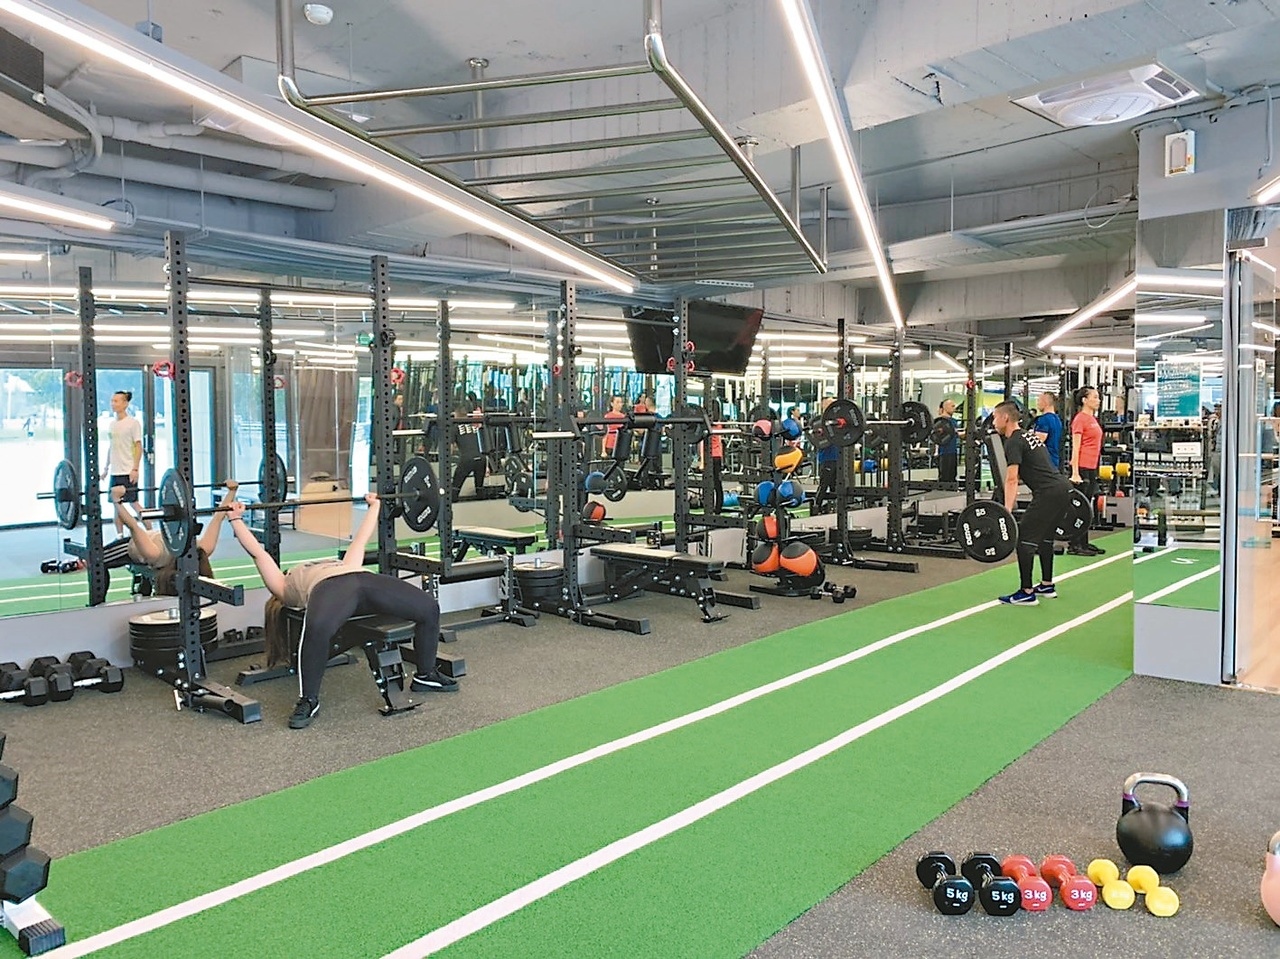 板橋體育場內的「森林跑站板橋館」，結合健康輕食與體適能課程，是新北市第一家複合式馬拉松跑者運動會館。 記者張曼蘋／攝影